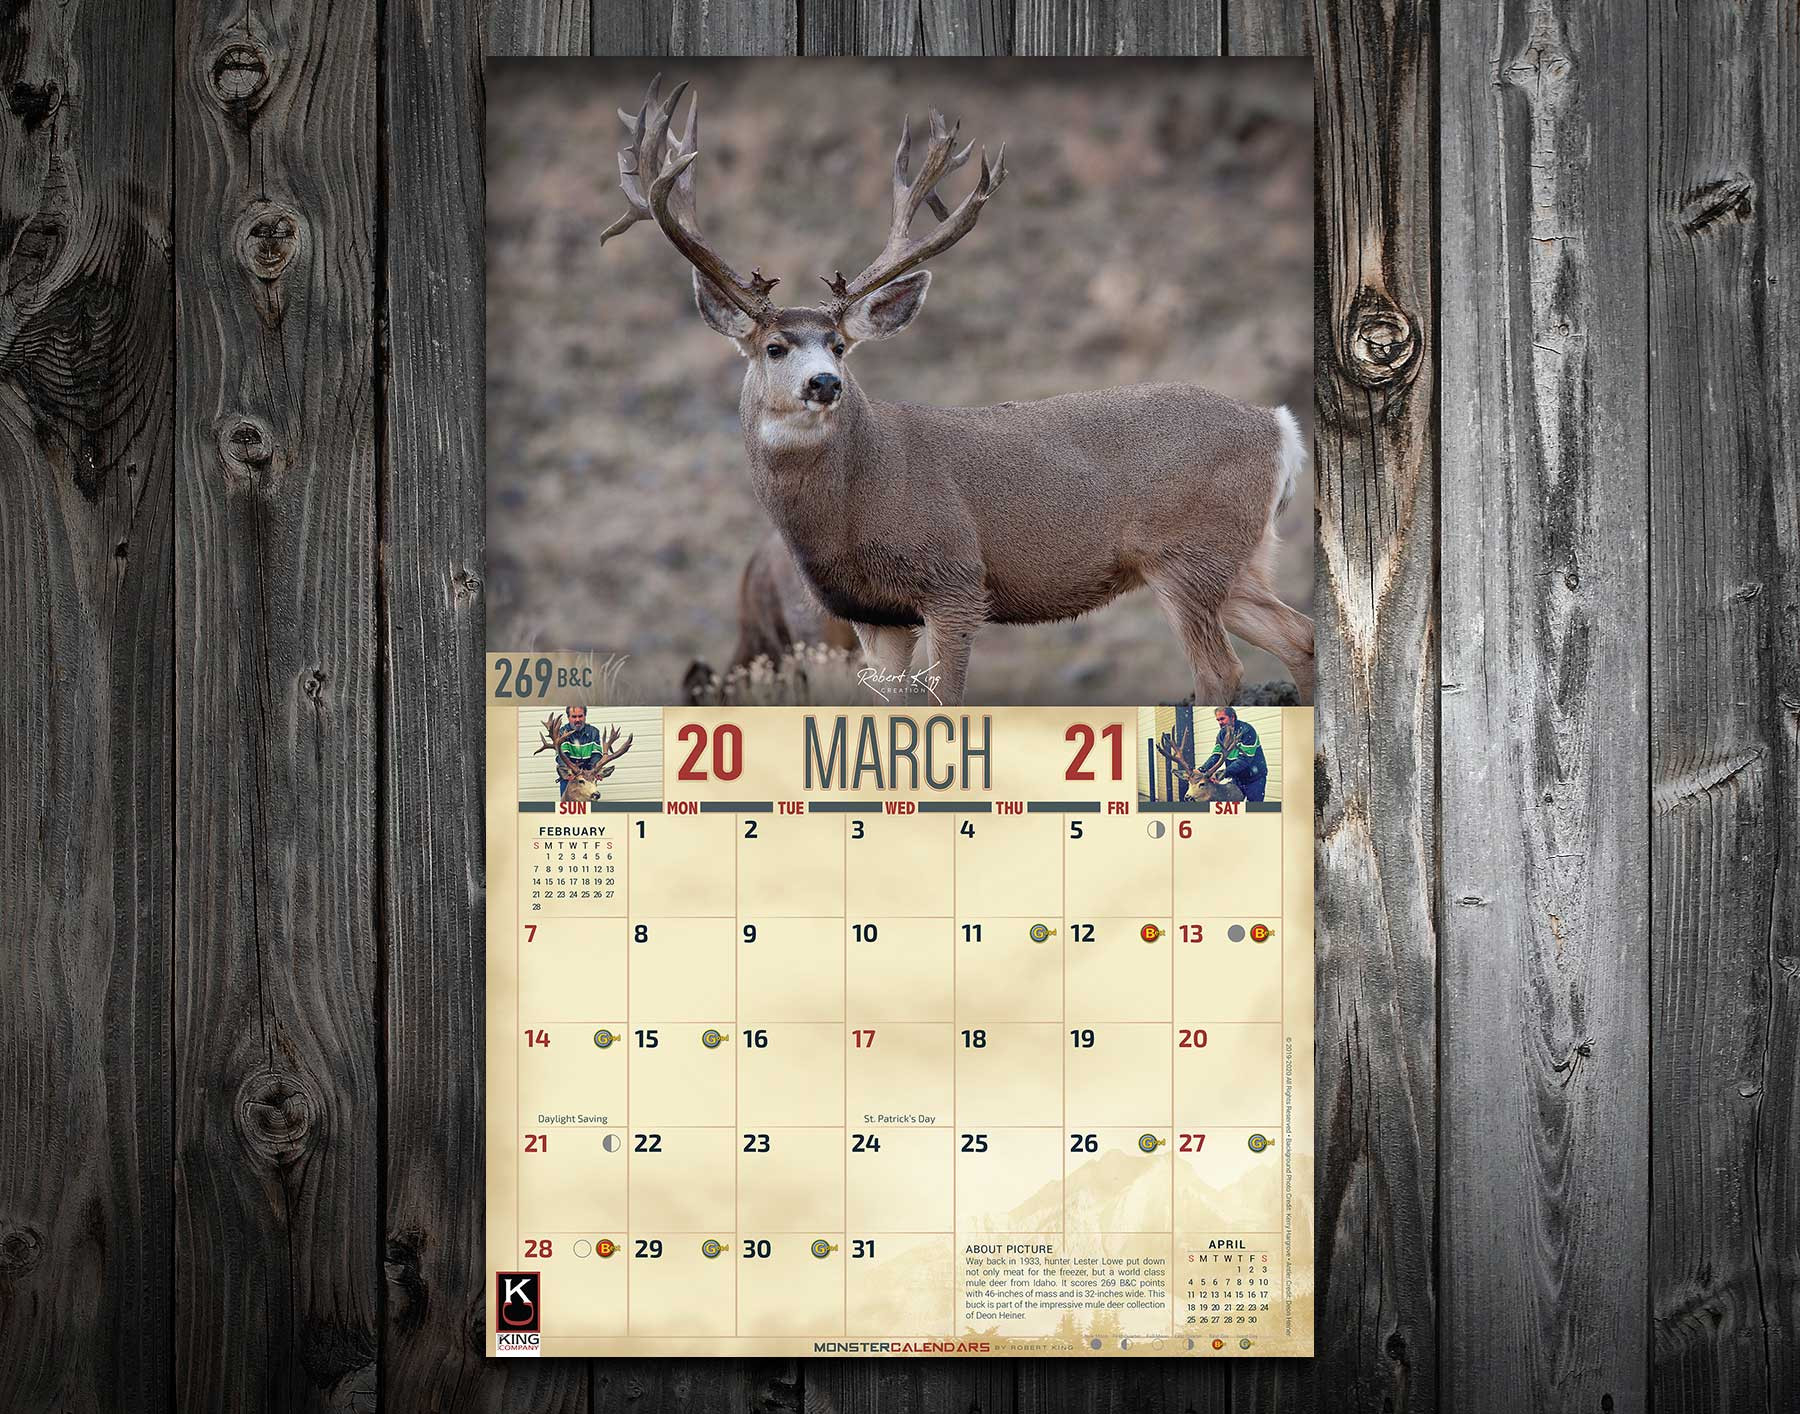 2021 Monster Mule Deer Calendar - The King Company-Deer Hunting Calendar 2021